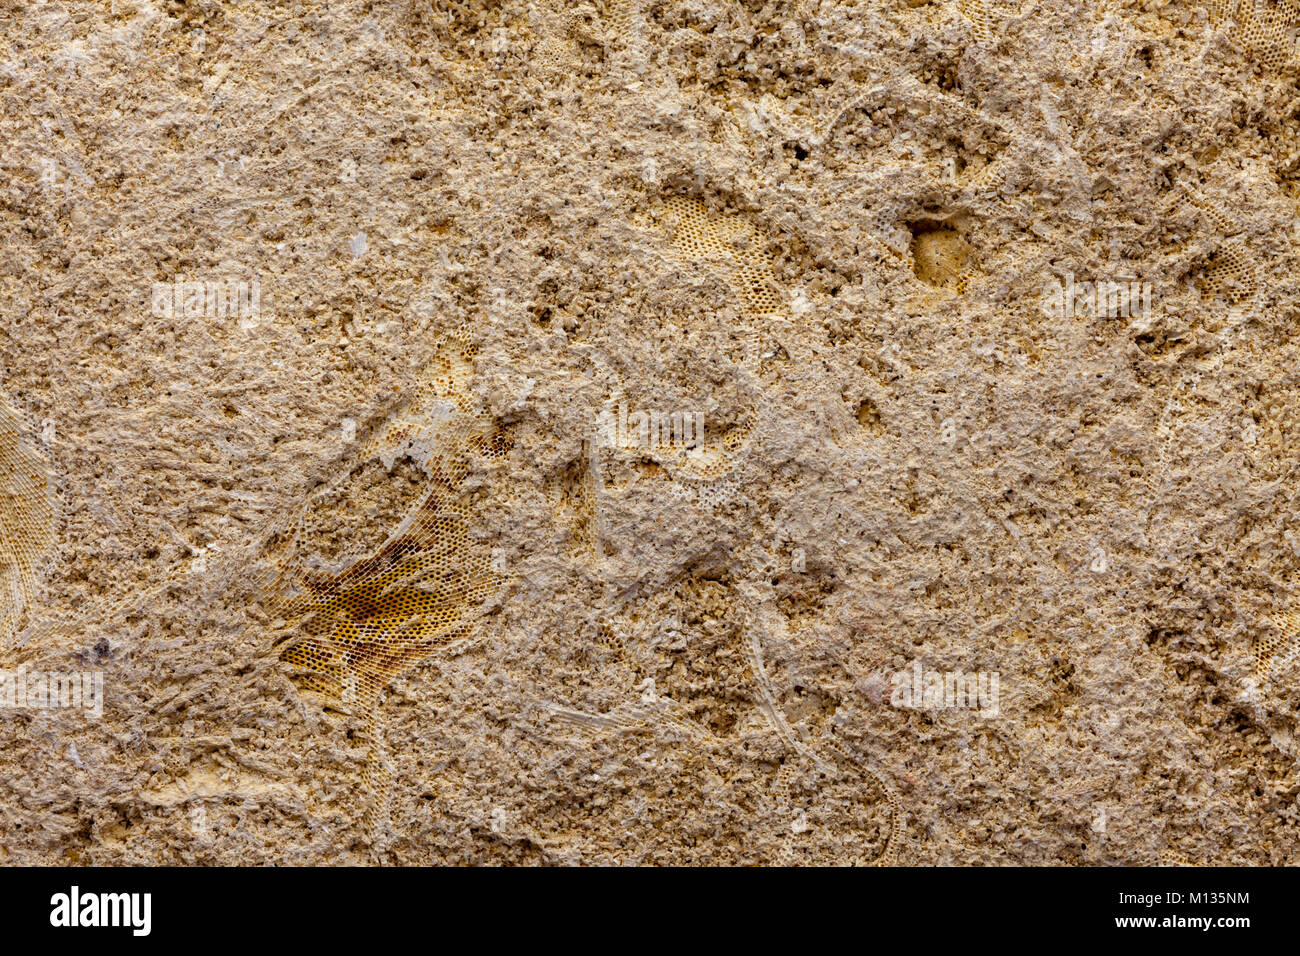 Dettaglio del bryozoan marine fossili contenenti specimins multipli Foto Stock